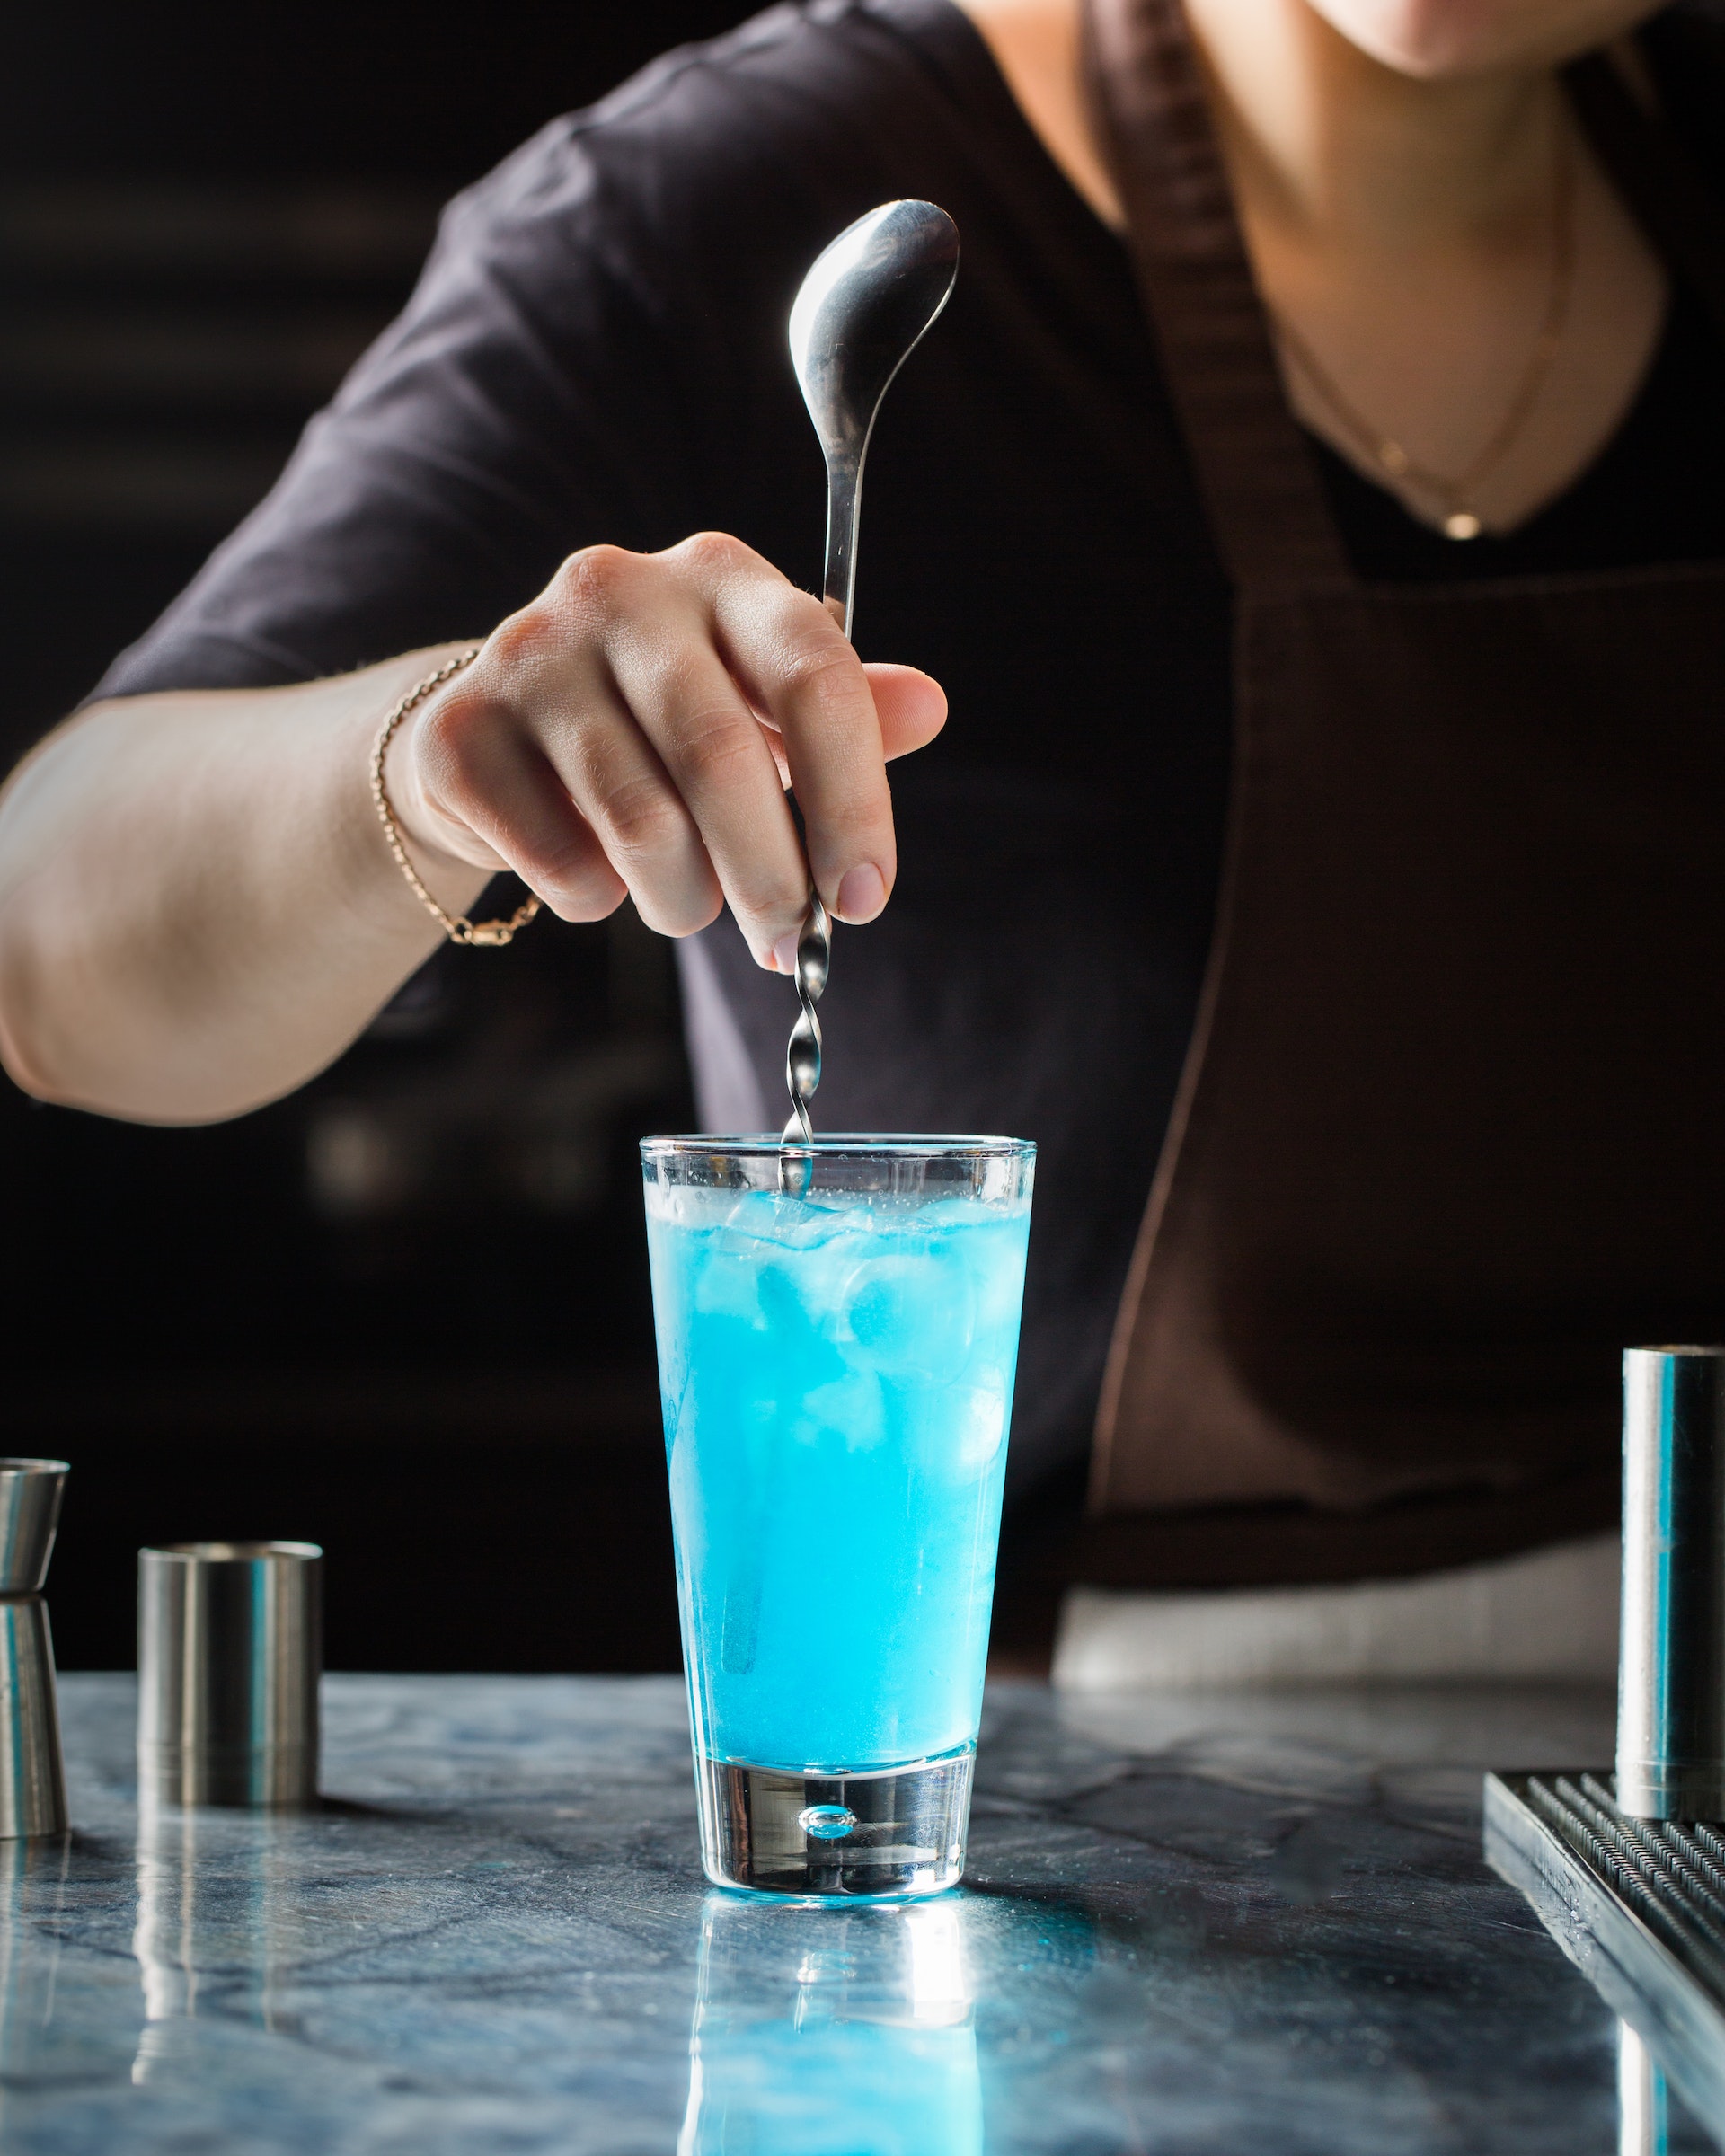 Un serveur mélange des boissons | Source : Shutterstock